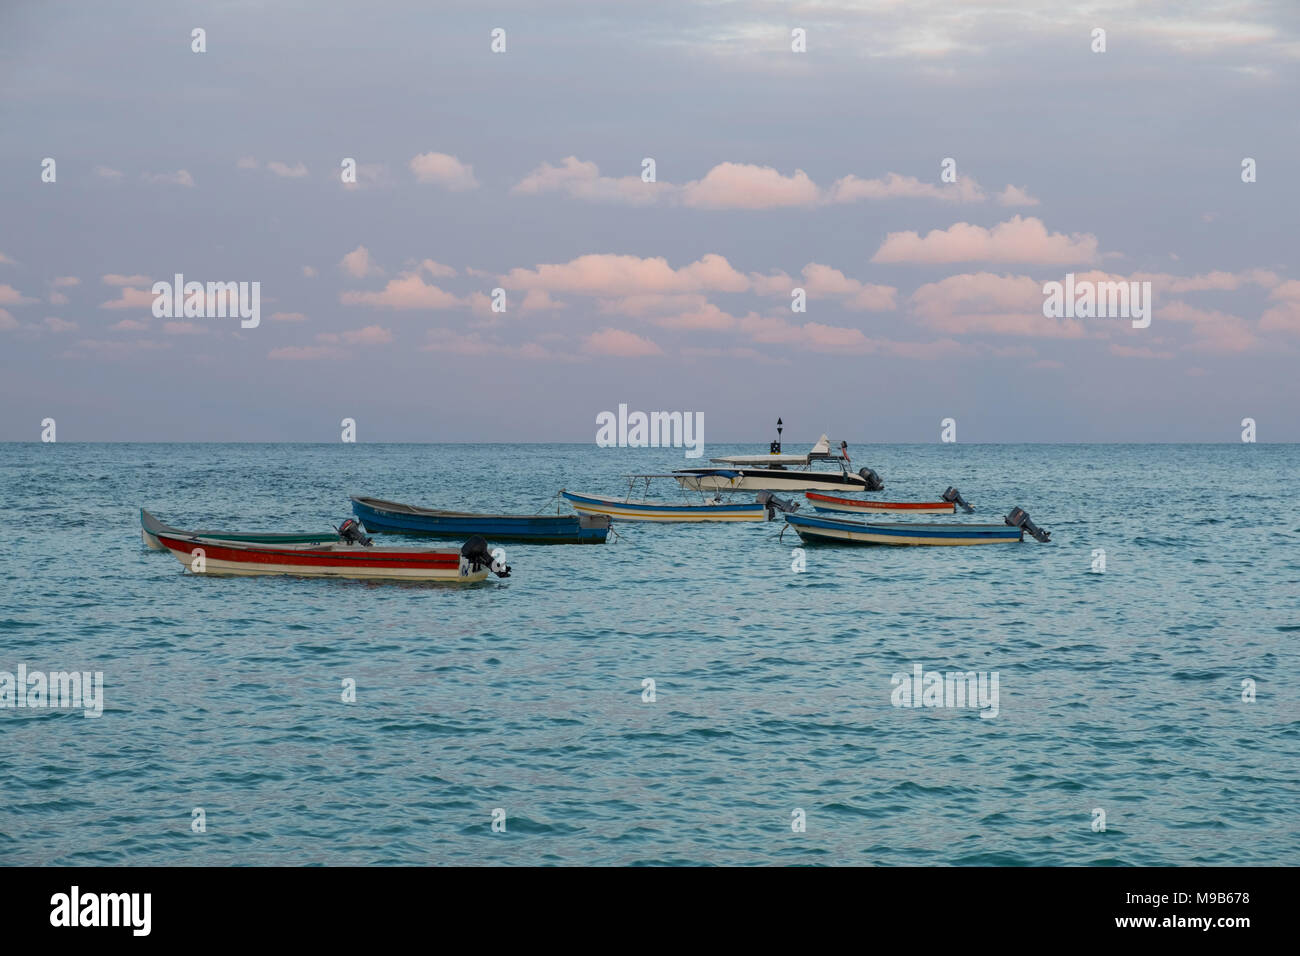 Kleine hölzerne Boote, Motorboote am Ocean Horizont Abendsonne - Stockfoto